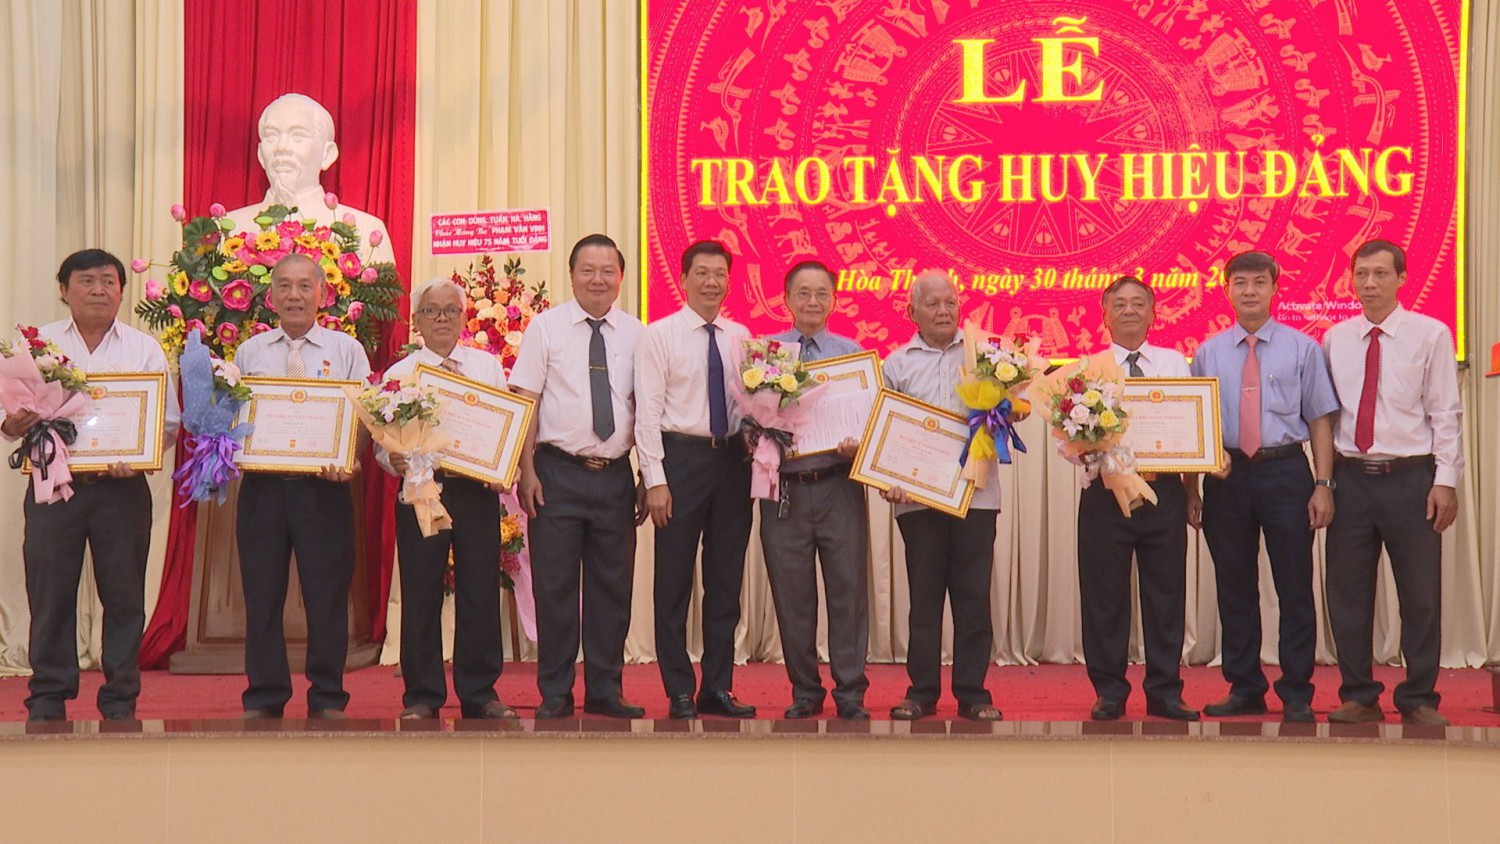 Phó Bí thư Tỉnh uỷ Nguyễn Mạnh Hùng và lãnh đạo thị xã Hoà Thành chụp hình lưu niệm cùng các đảng viên.